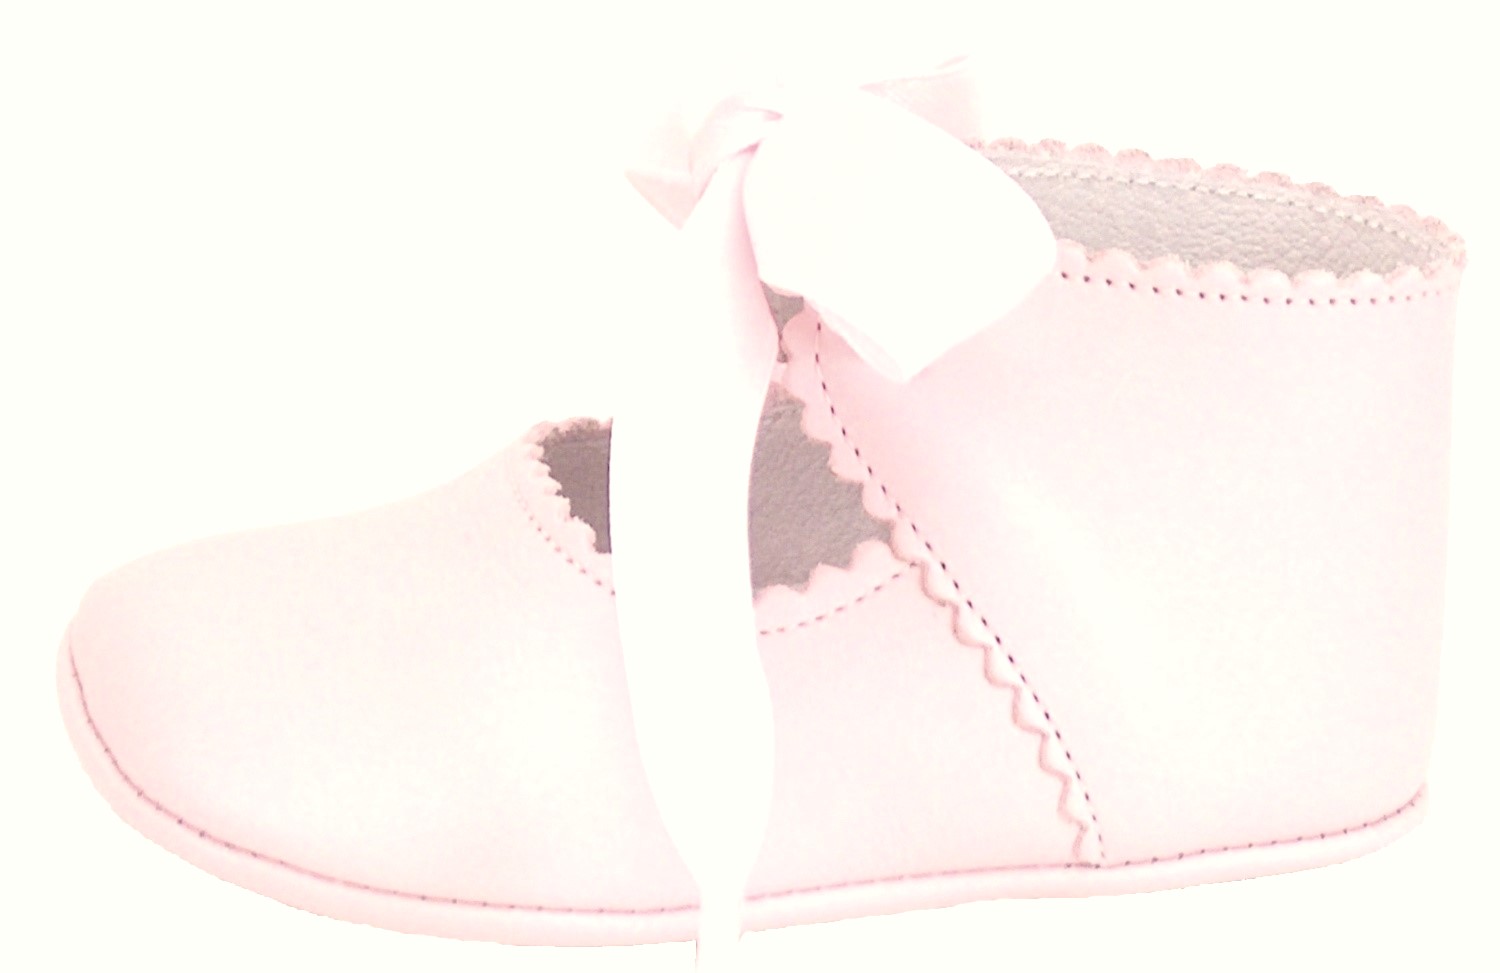 PR-229 - Pink Dress Crib Pram Shoes